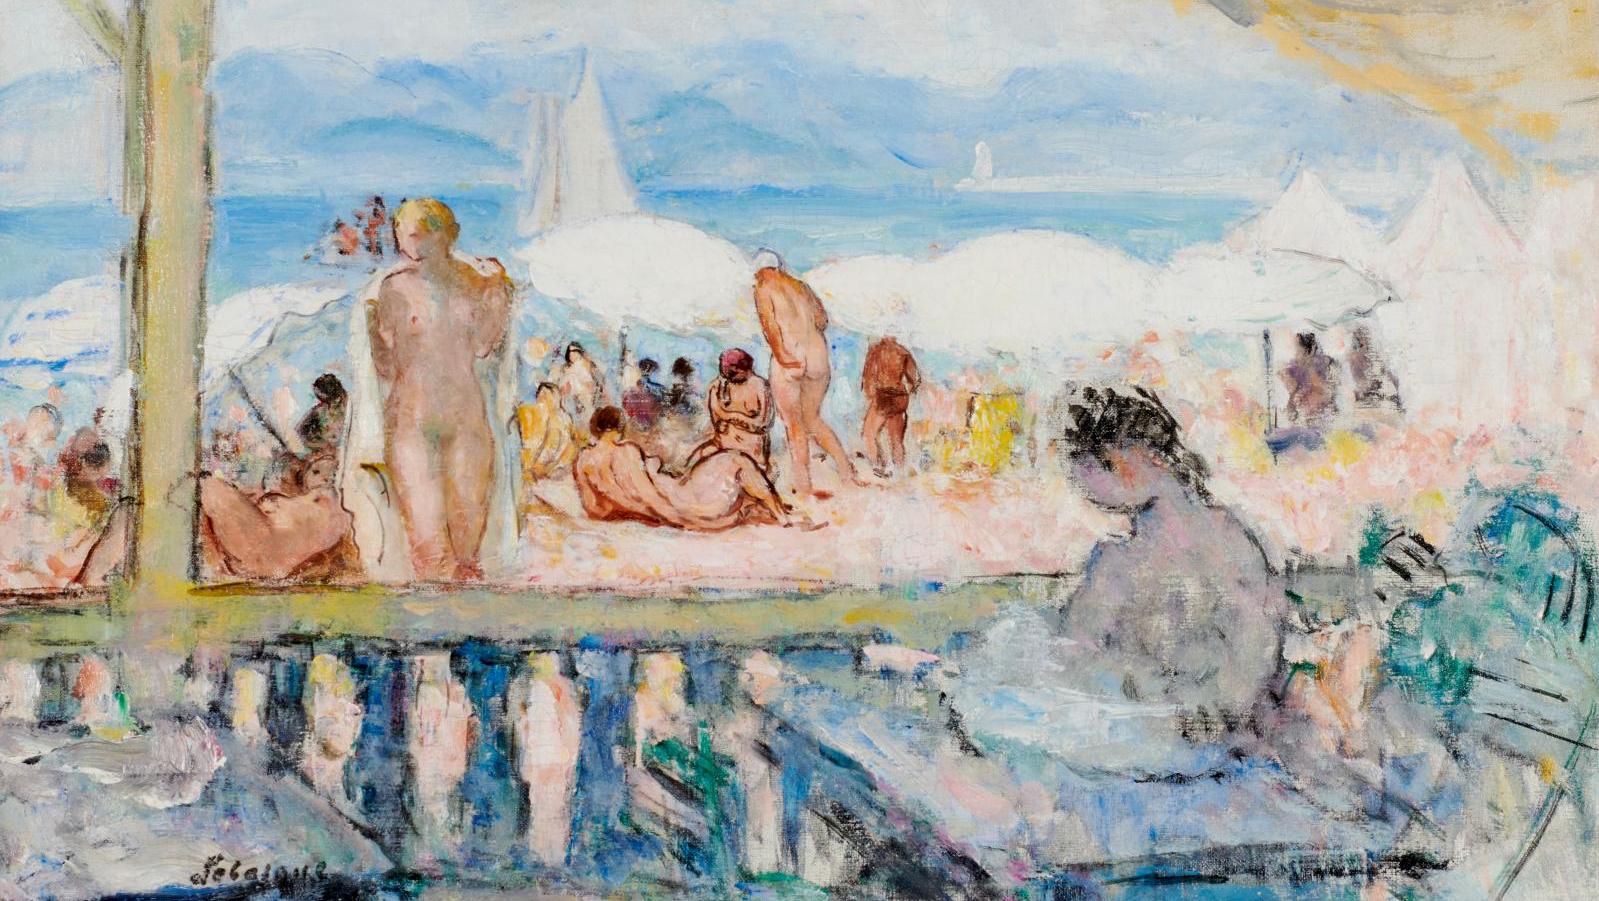 Henri Lebasque (1865-1937), Véranda sur la plage de Cannes (Veranda on the Beach... Henri Lebasque, Painting the Zest for Life